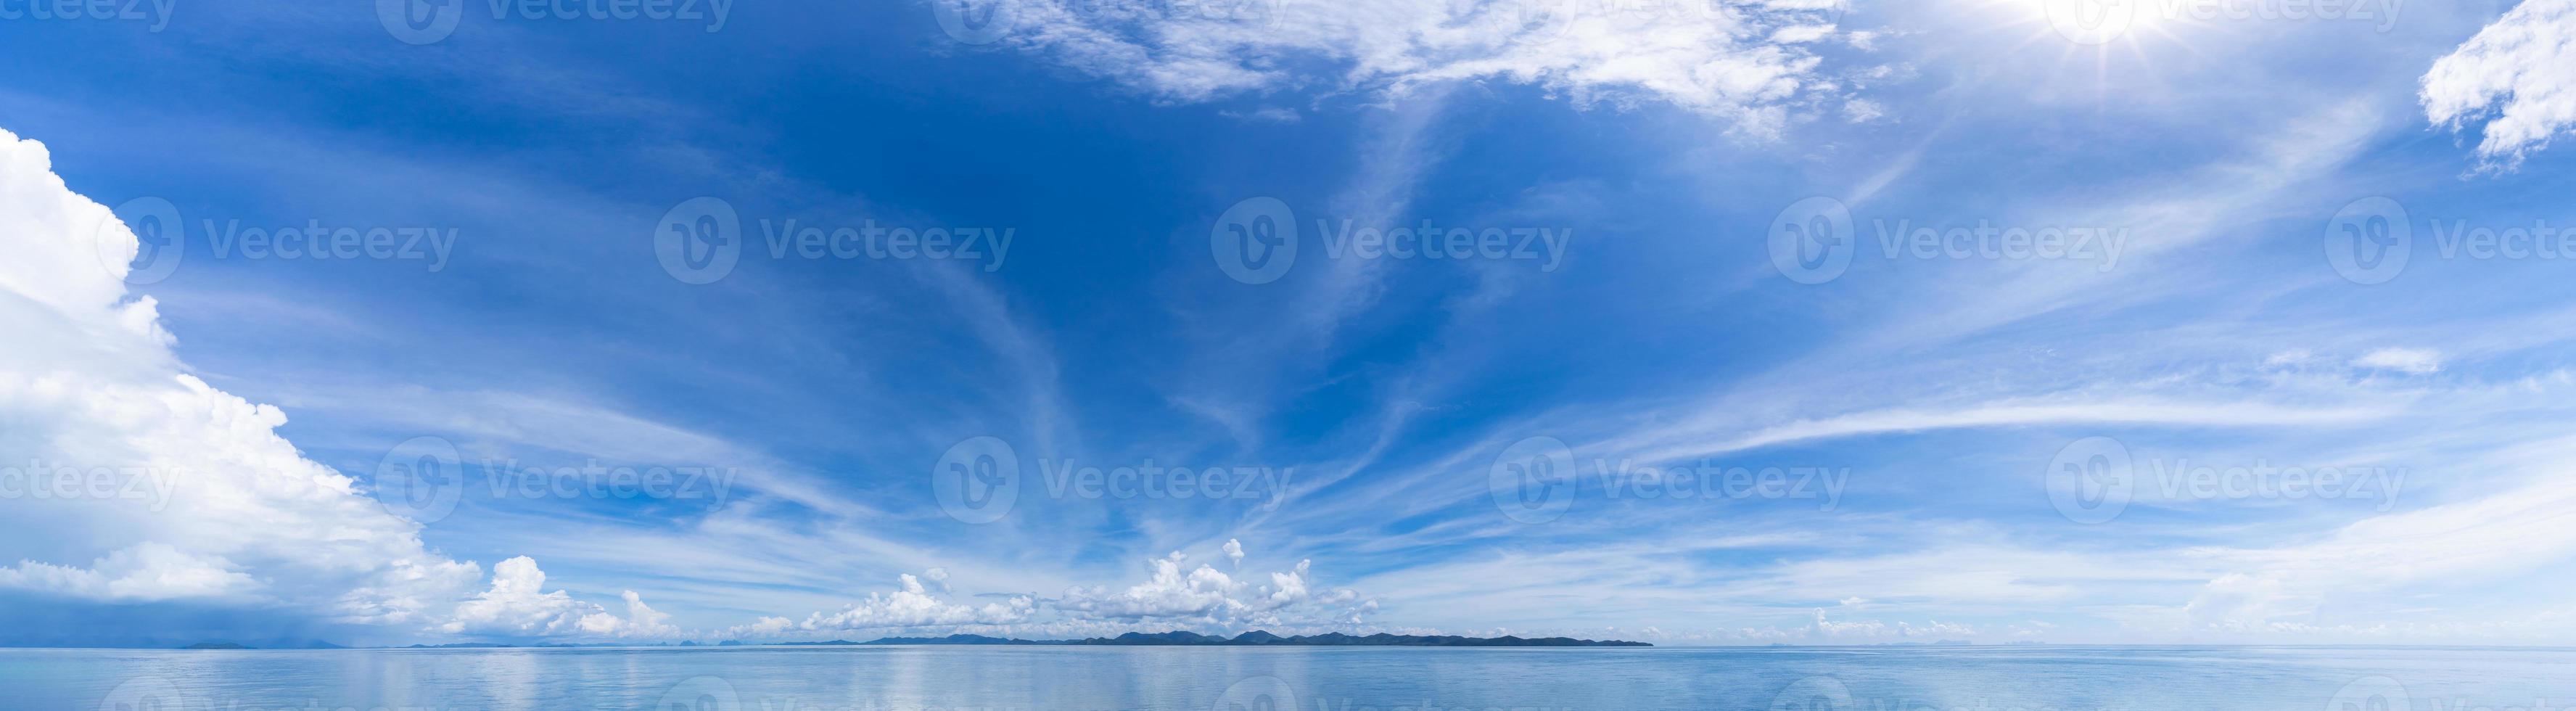 blauwe hemel horizon achtergrond met wolken op een zonnige dag zeegezicht panorama phuket thailand foto